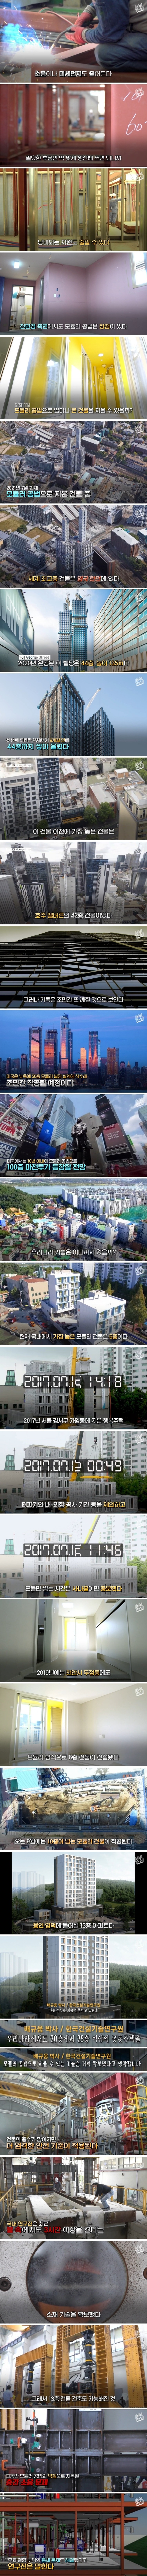 레고처럼 조립해 만드는 고층 아파트 (2).jpg